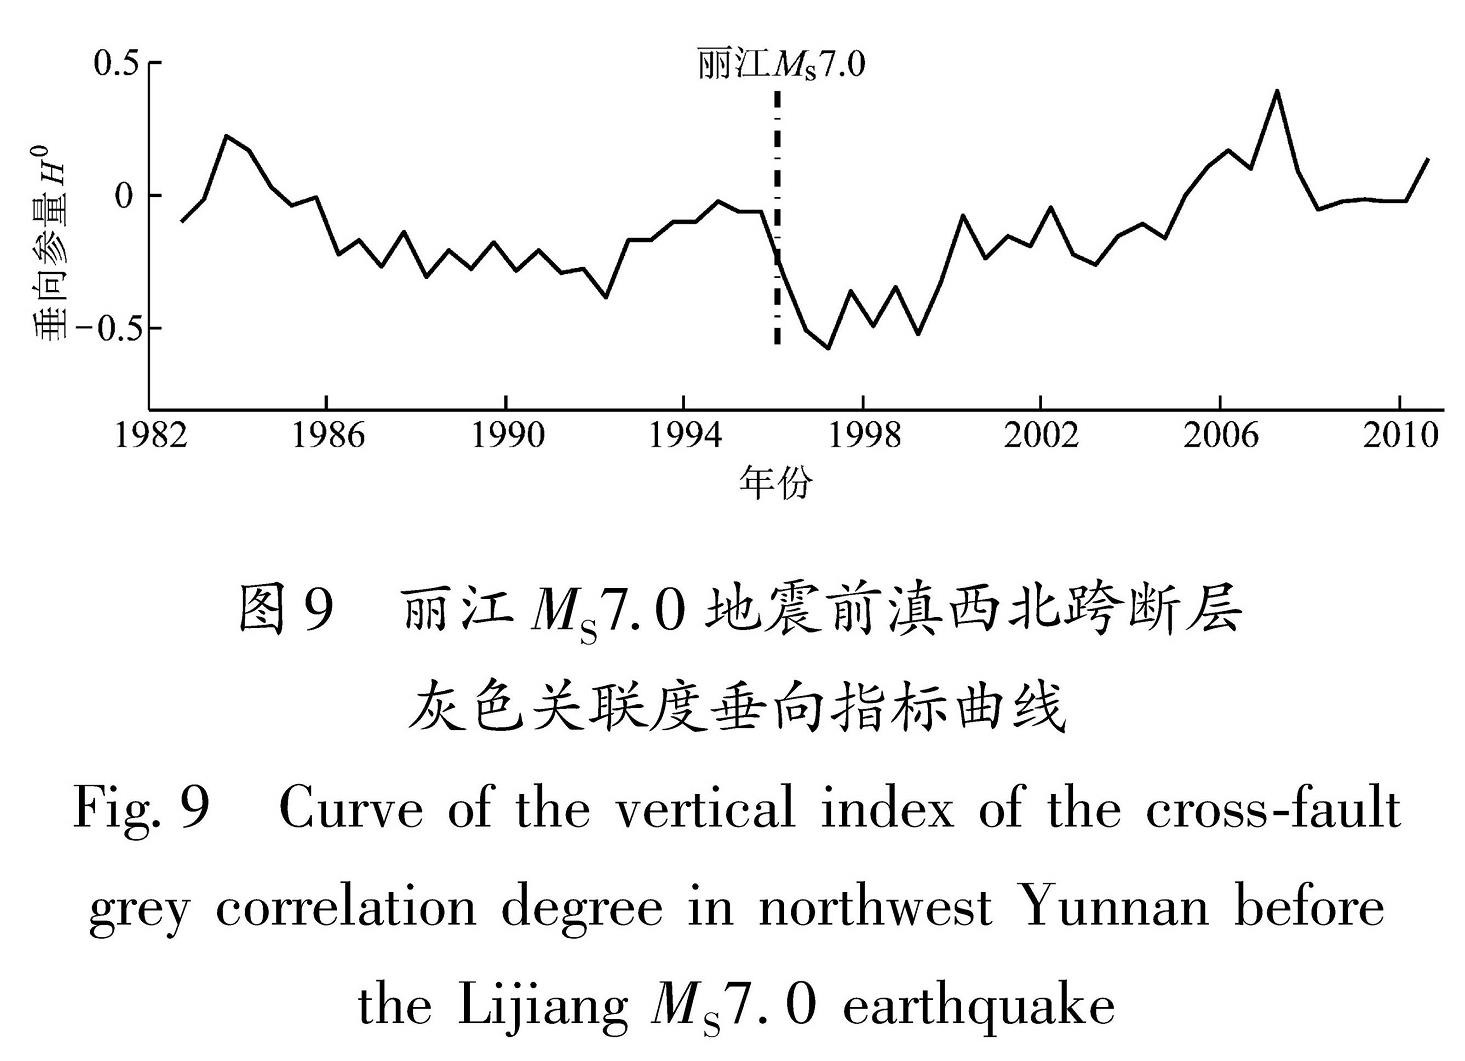 图9 丽江MS7.0地震前滇西北跨断层灰色关联度垂向指标曲线<br/>Fig.9 Curve of the vertical index of the cross-fault grey correlation degree in northwest Yunnan before  the Lijiang MS7.0 earthquake